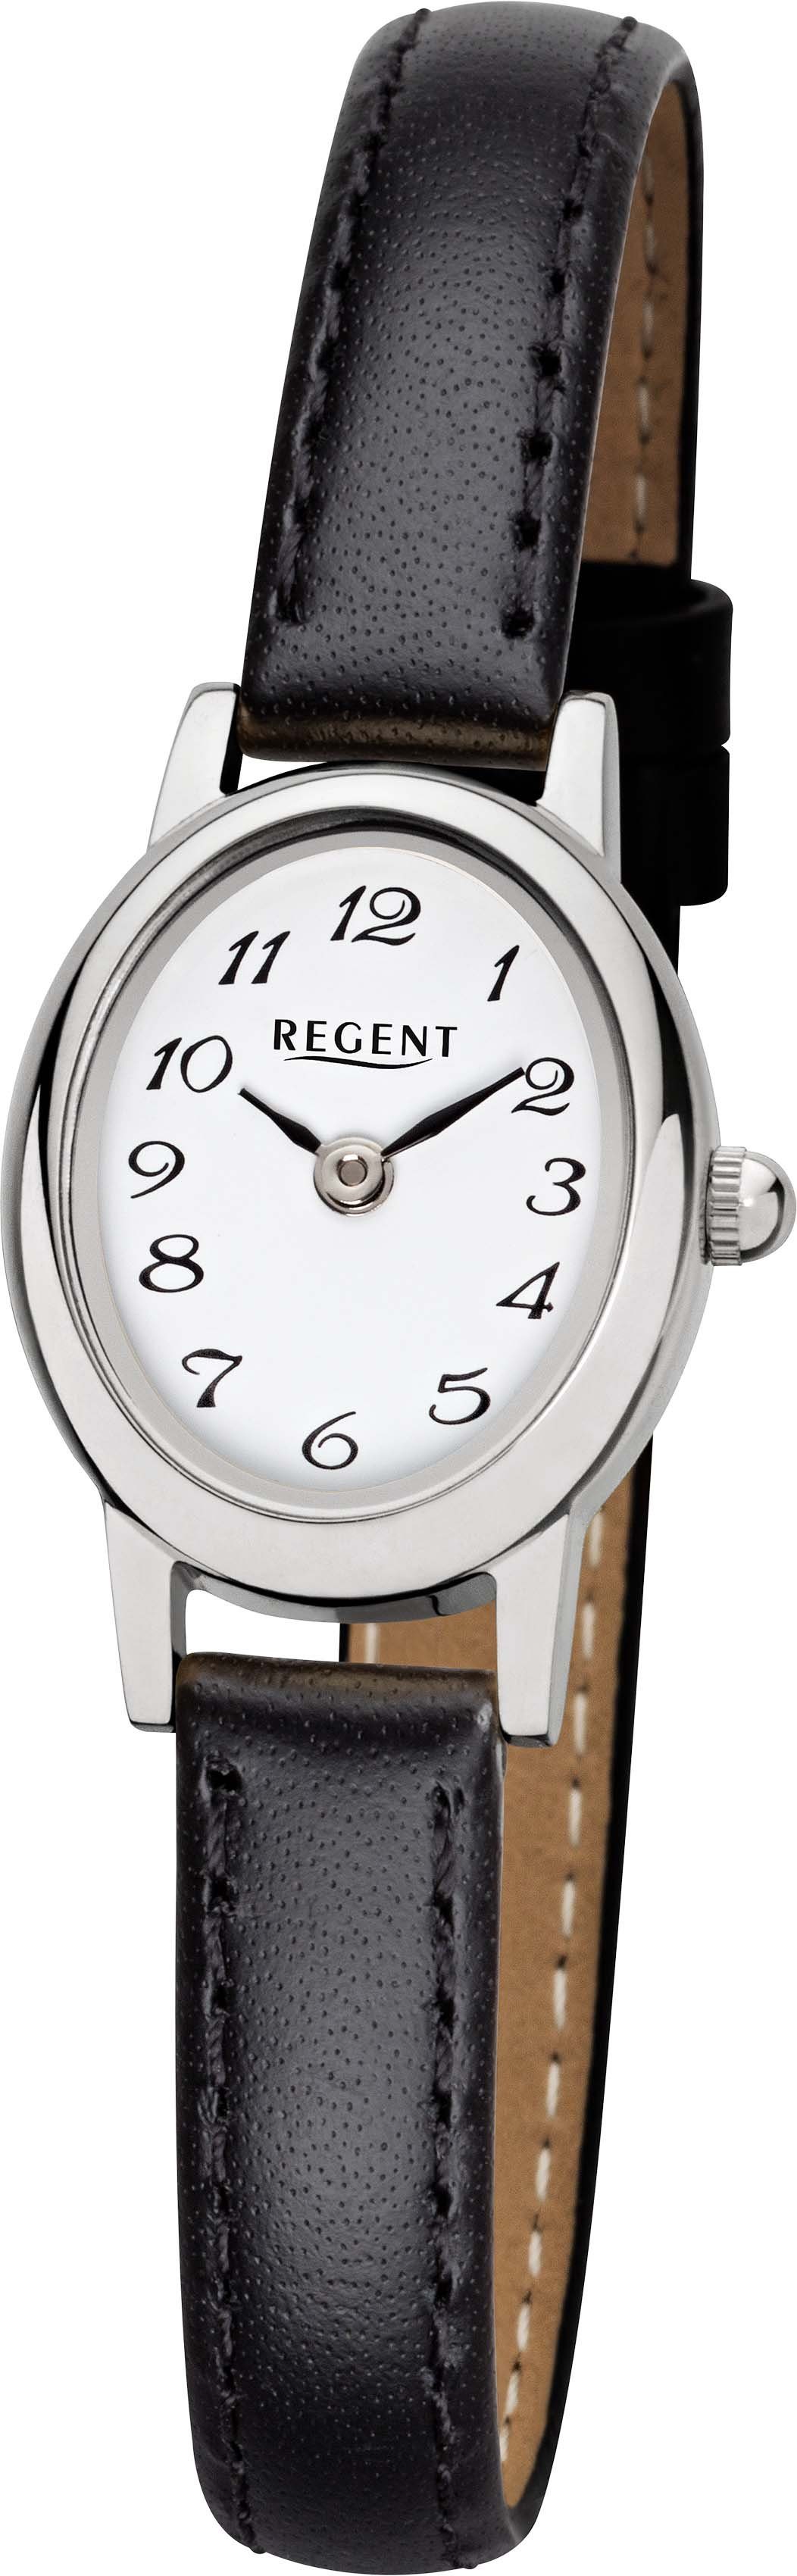 Regent Quarzuhr F-1409 - 3272.40.19, Armbanduhr, Damenuhr, Mineralglas